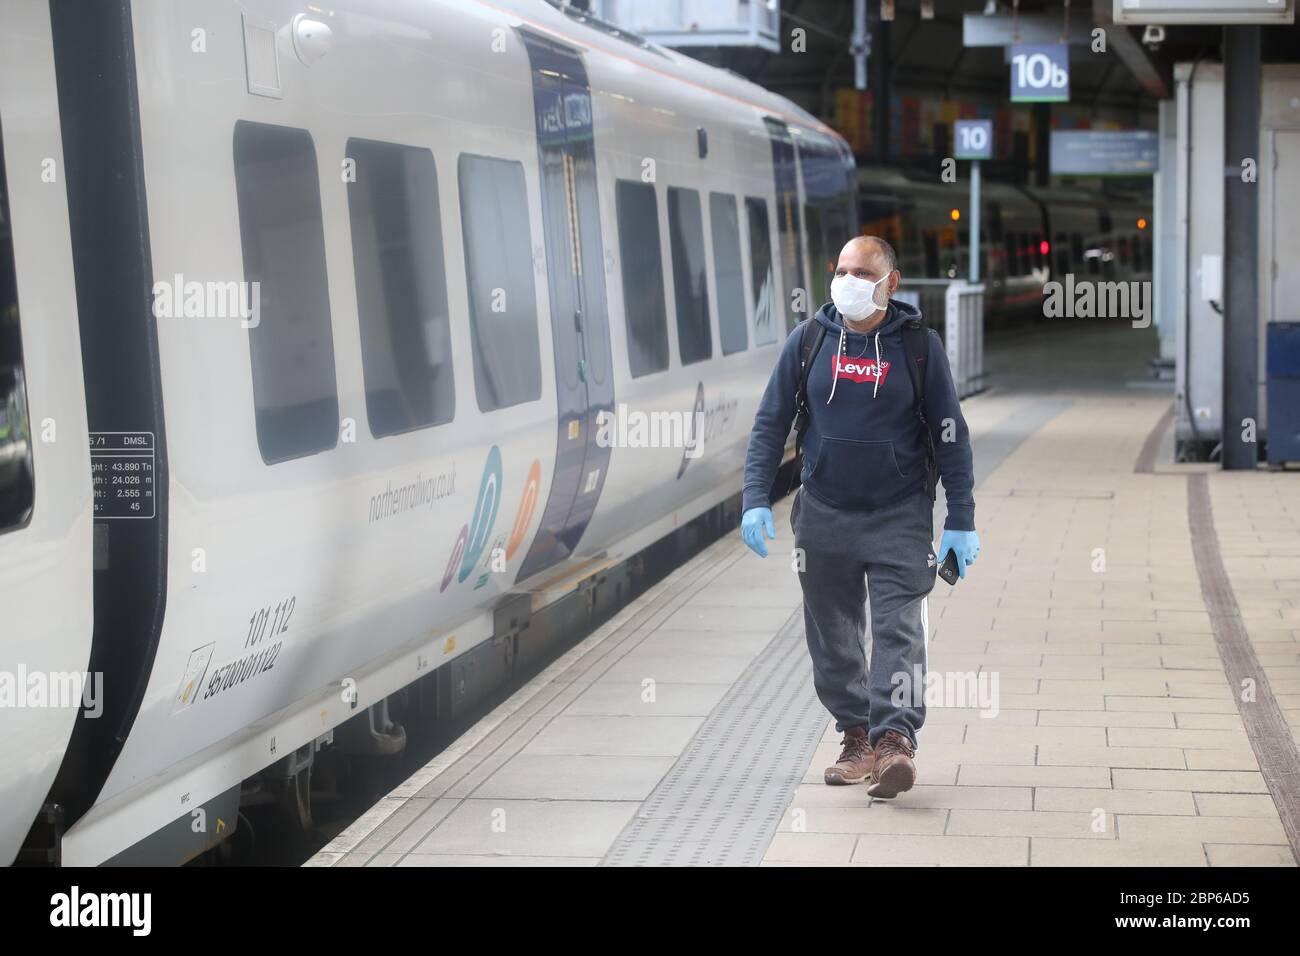 Pendler am Bahnhof Leeds, da die Zugverbindungen im Zuge der Lockerung der Beschränkungen für die Sperrung des Coronavirus zunehmen. Stockfoto